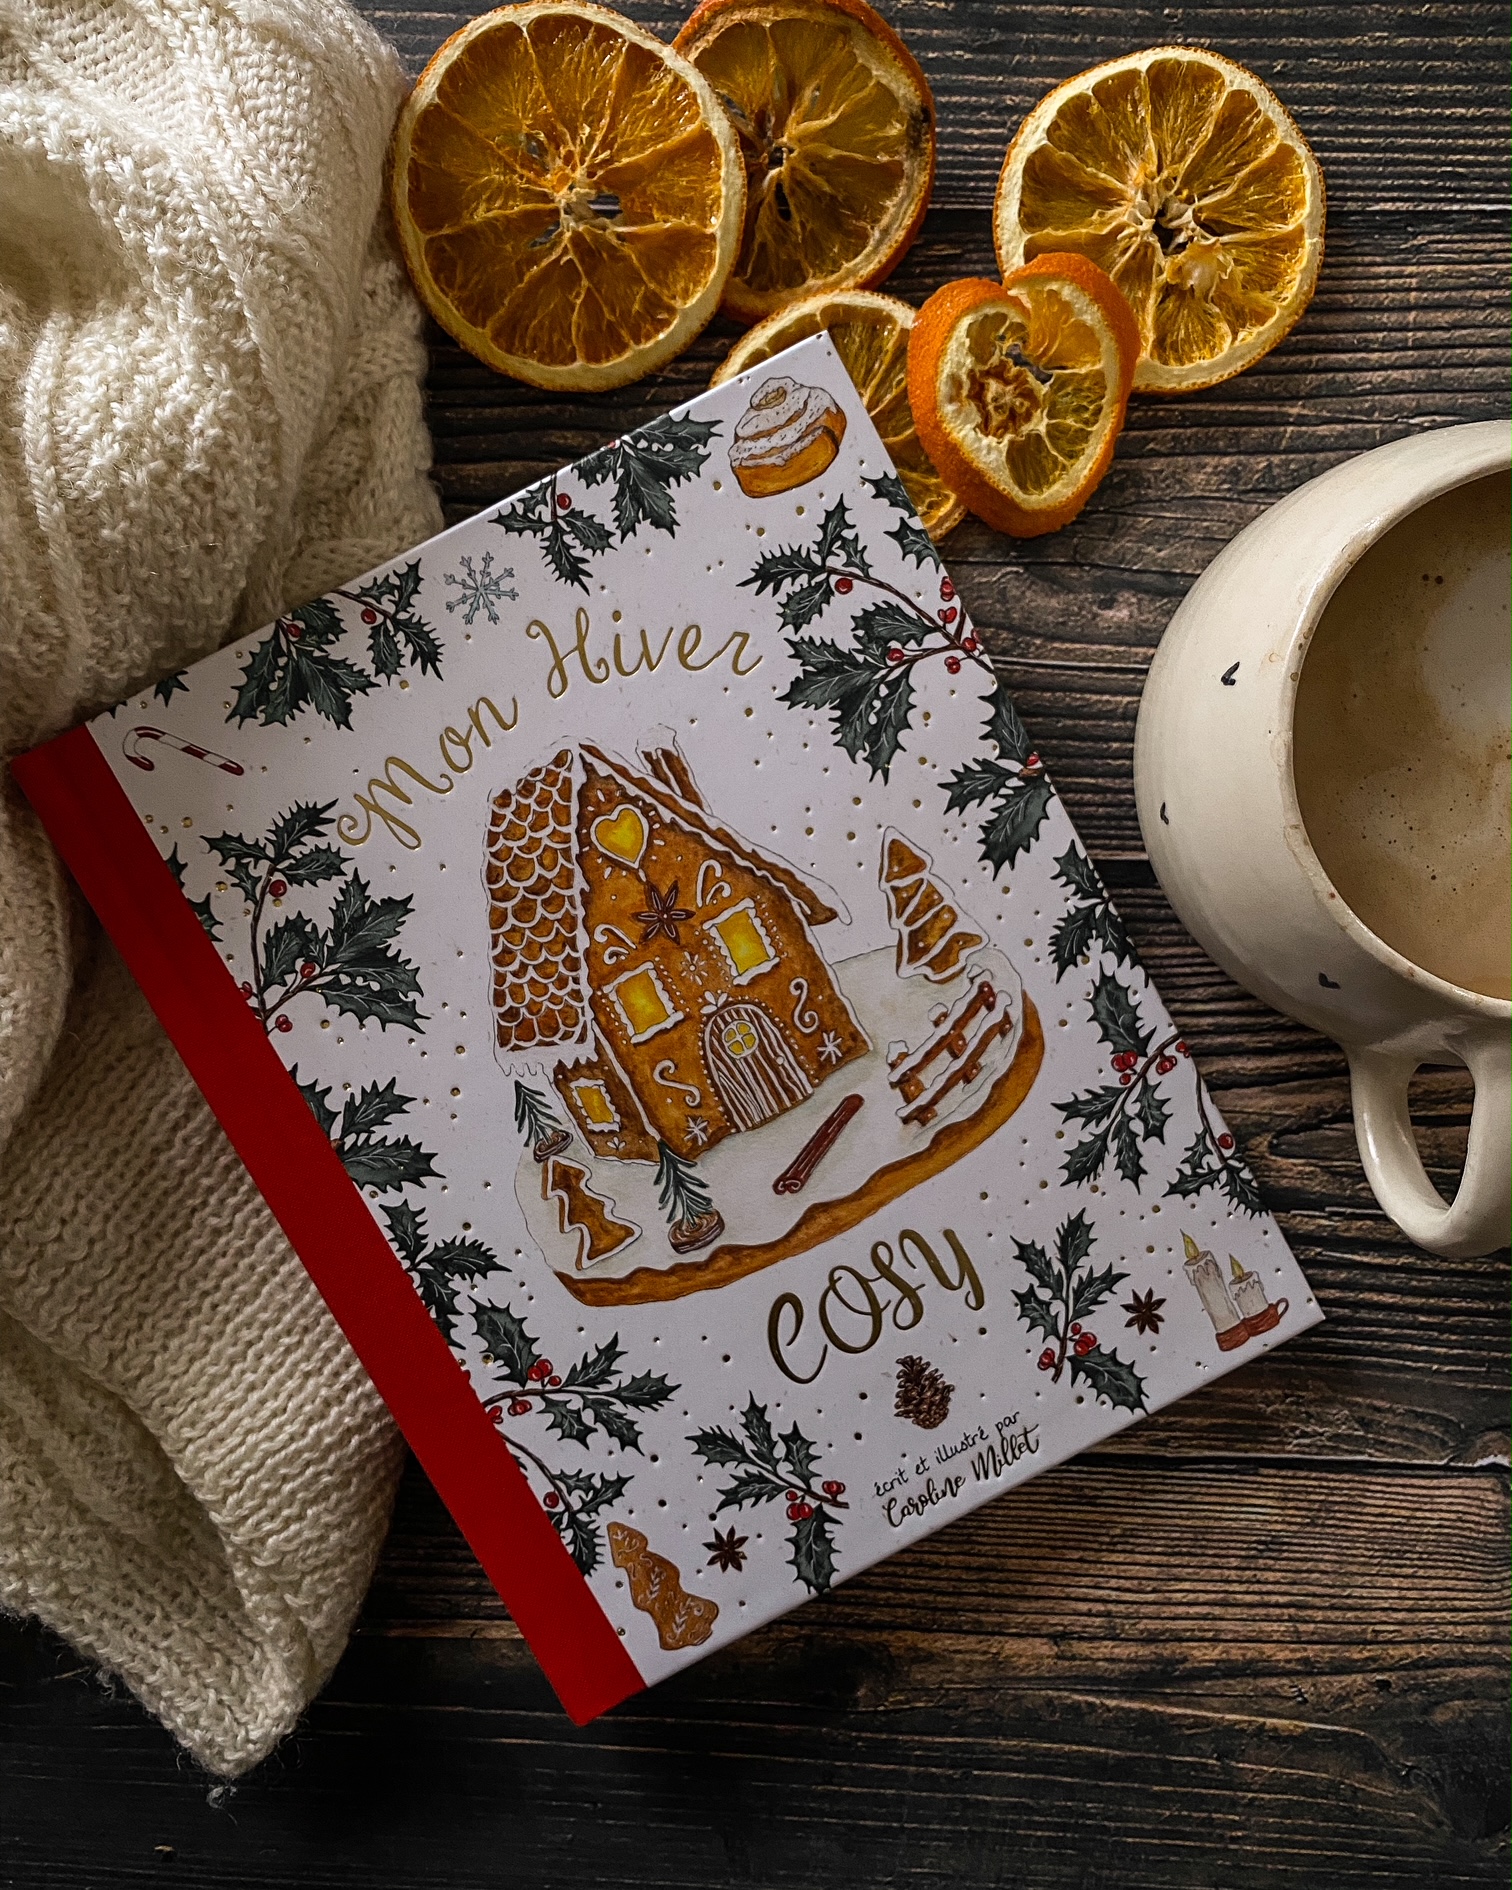 Mon Hiver cosy, de Caroline Millet : réenchanter la saison froide